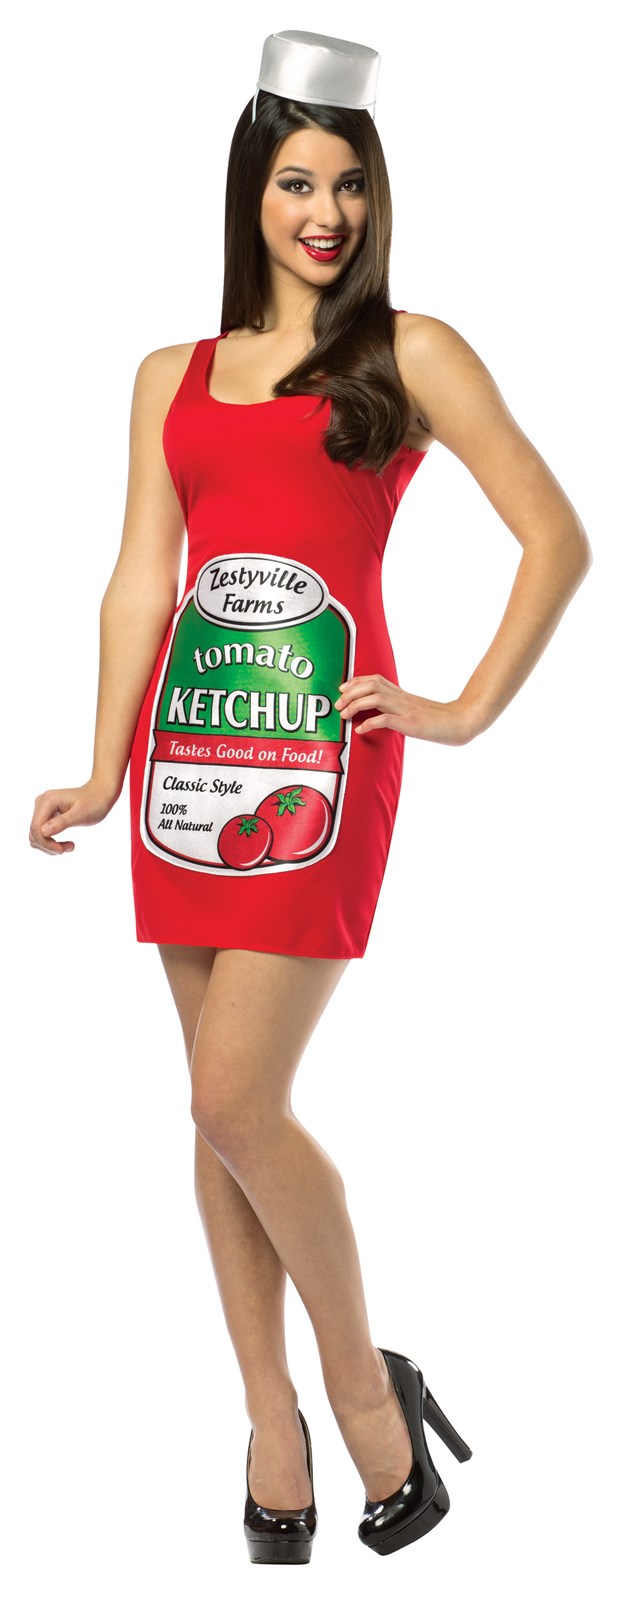 Zestyville Ketchup Adult Tank Dress